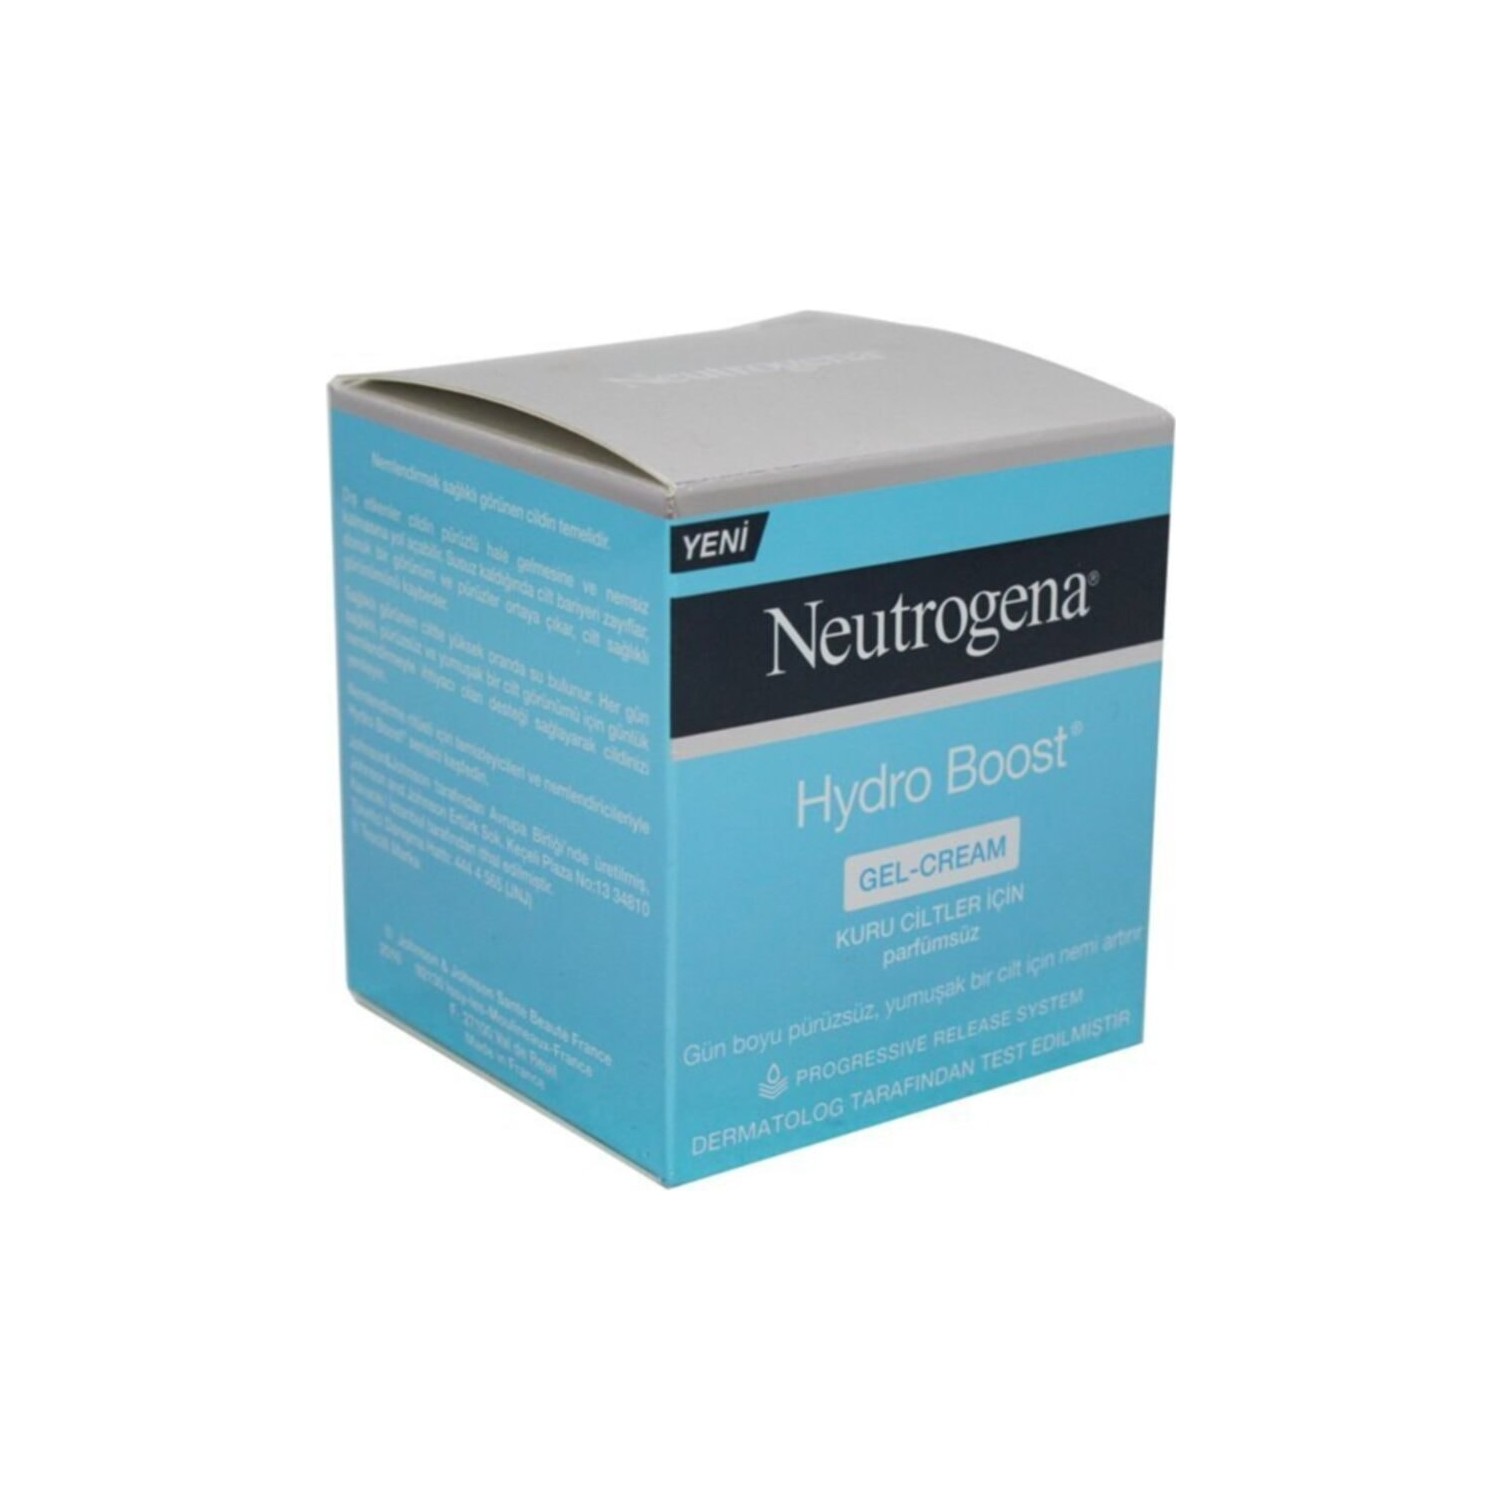 цена Гель-крем Neutrogena Hydro Boost для сухой кожи, 50 мл